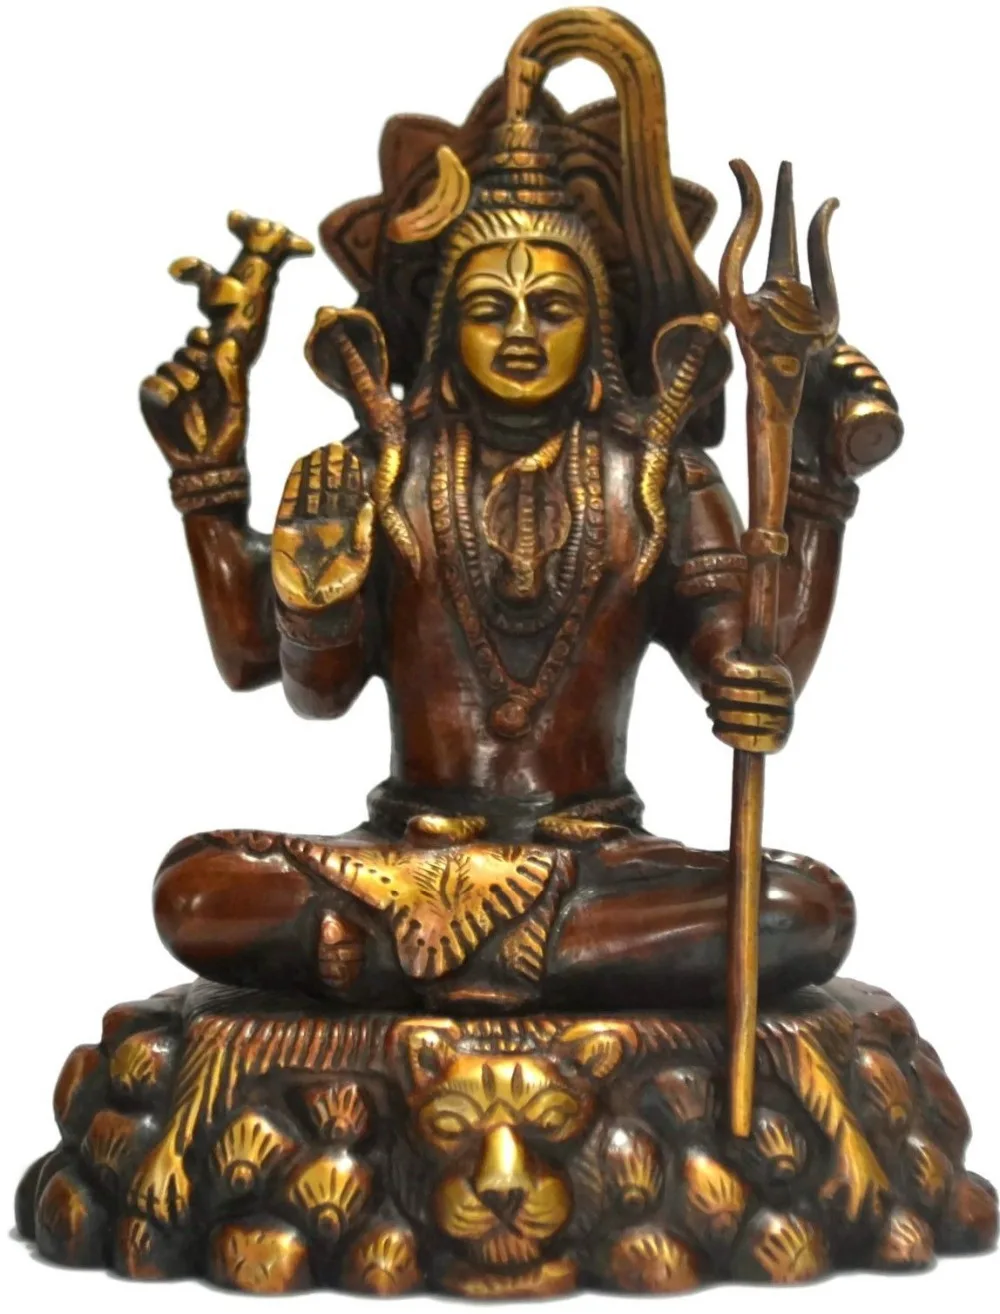 311 + Шива Ганеш статуя индуистский Властелин латунь Бог Nataraja Статуэтка Скульптура